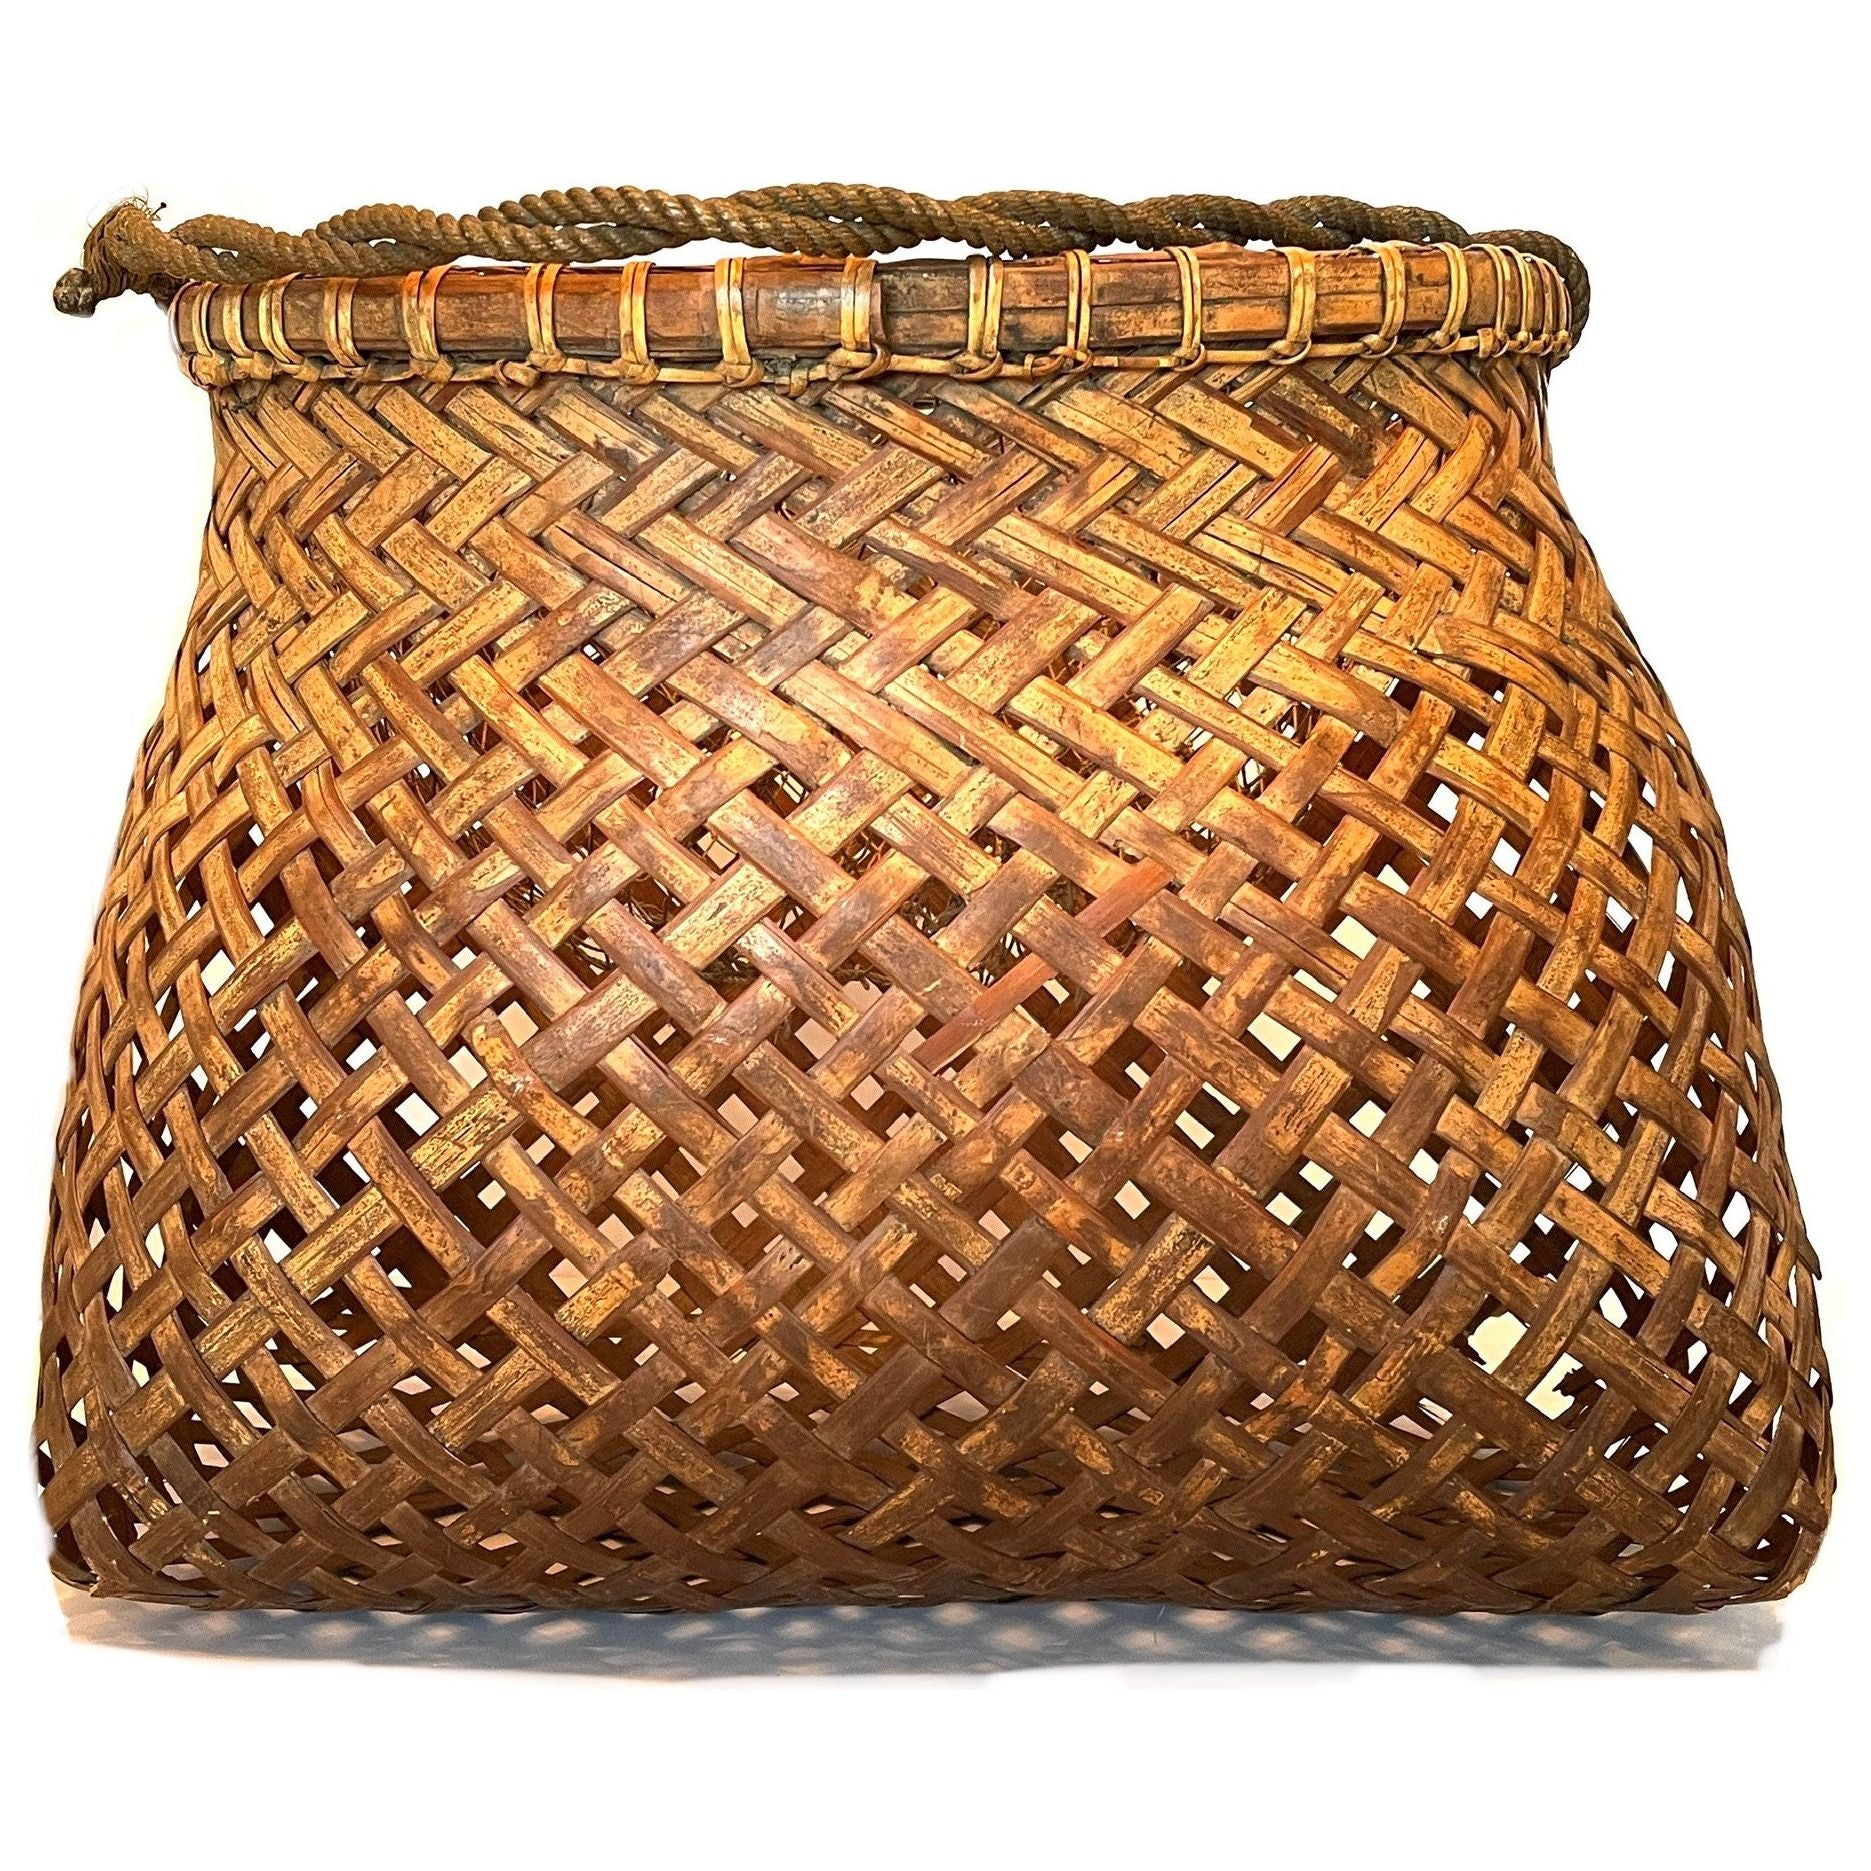 Philippine Round Fish Trap Basket – Our Taste Design